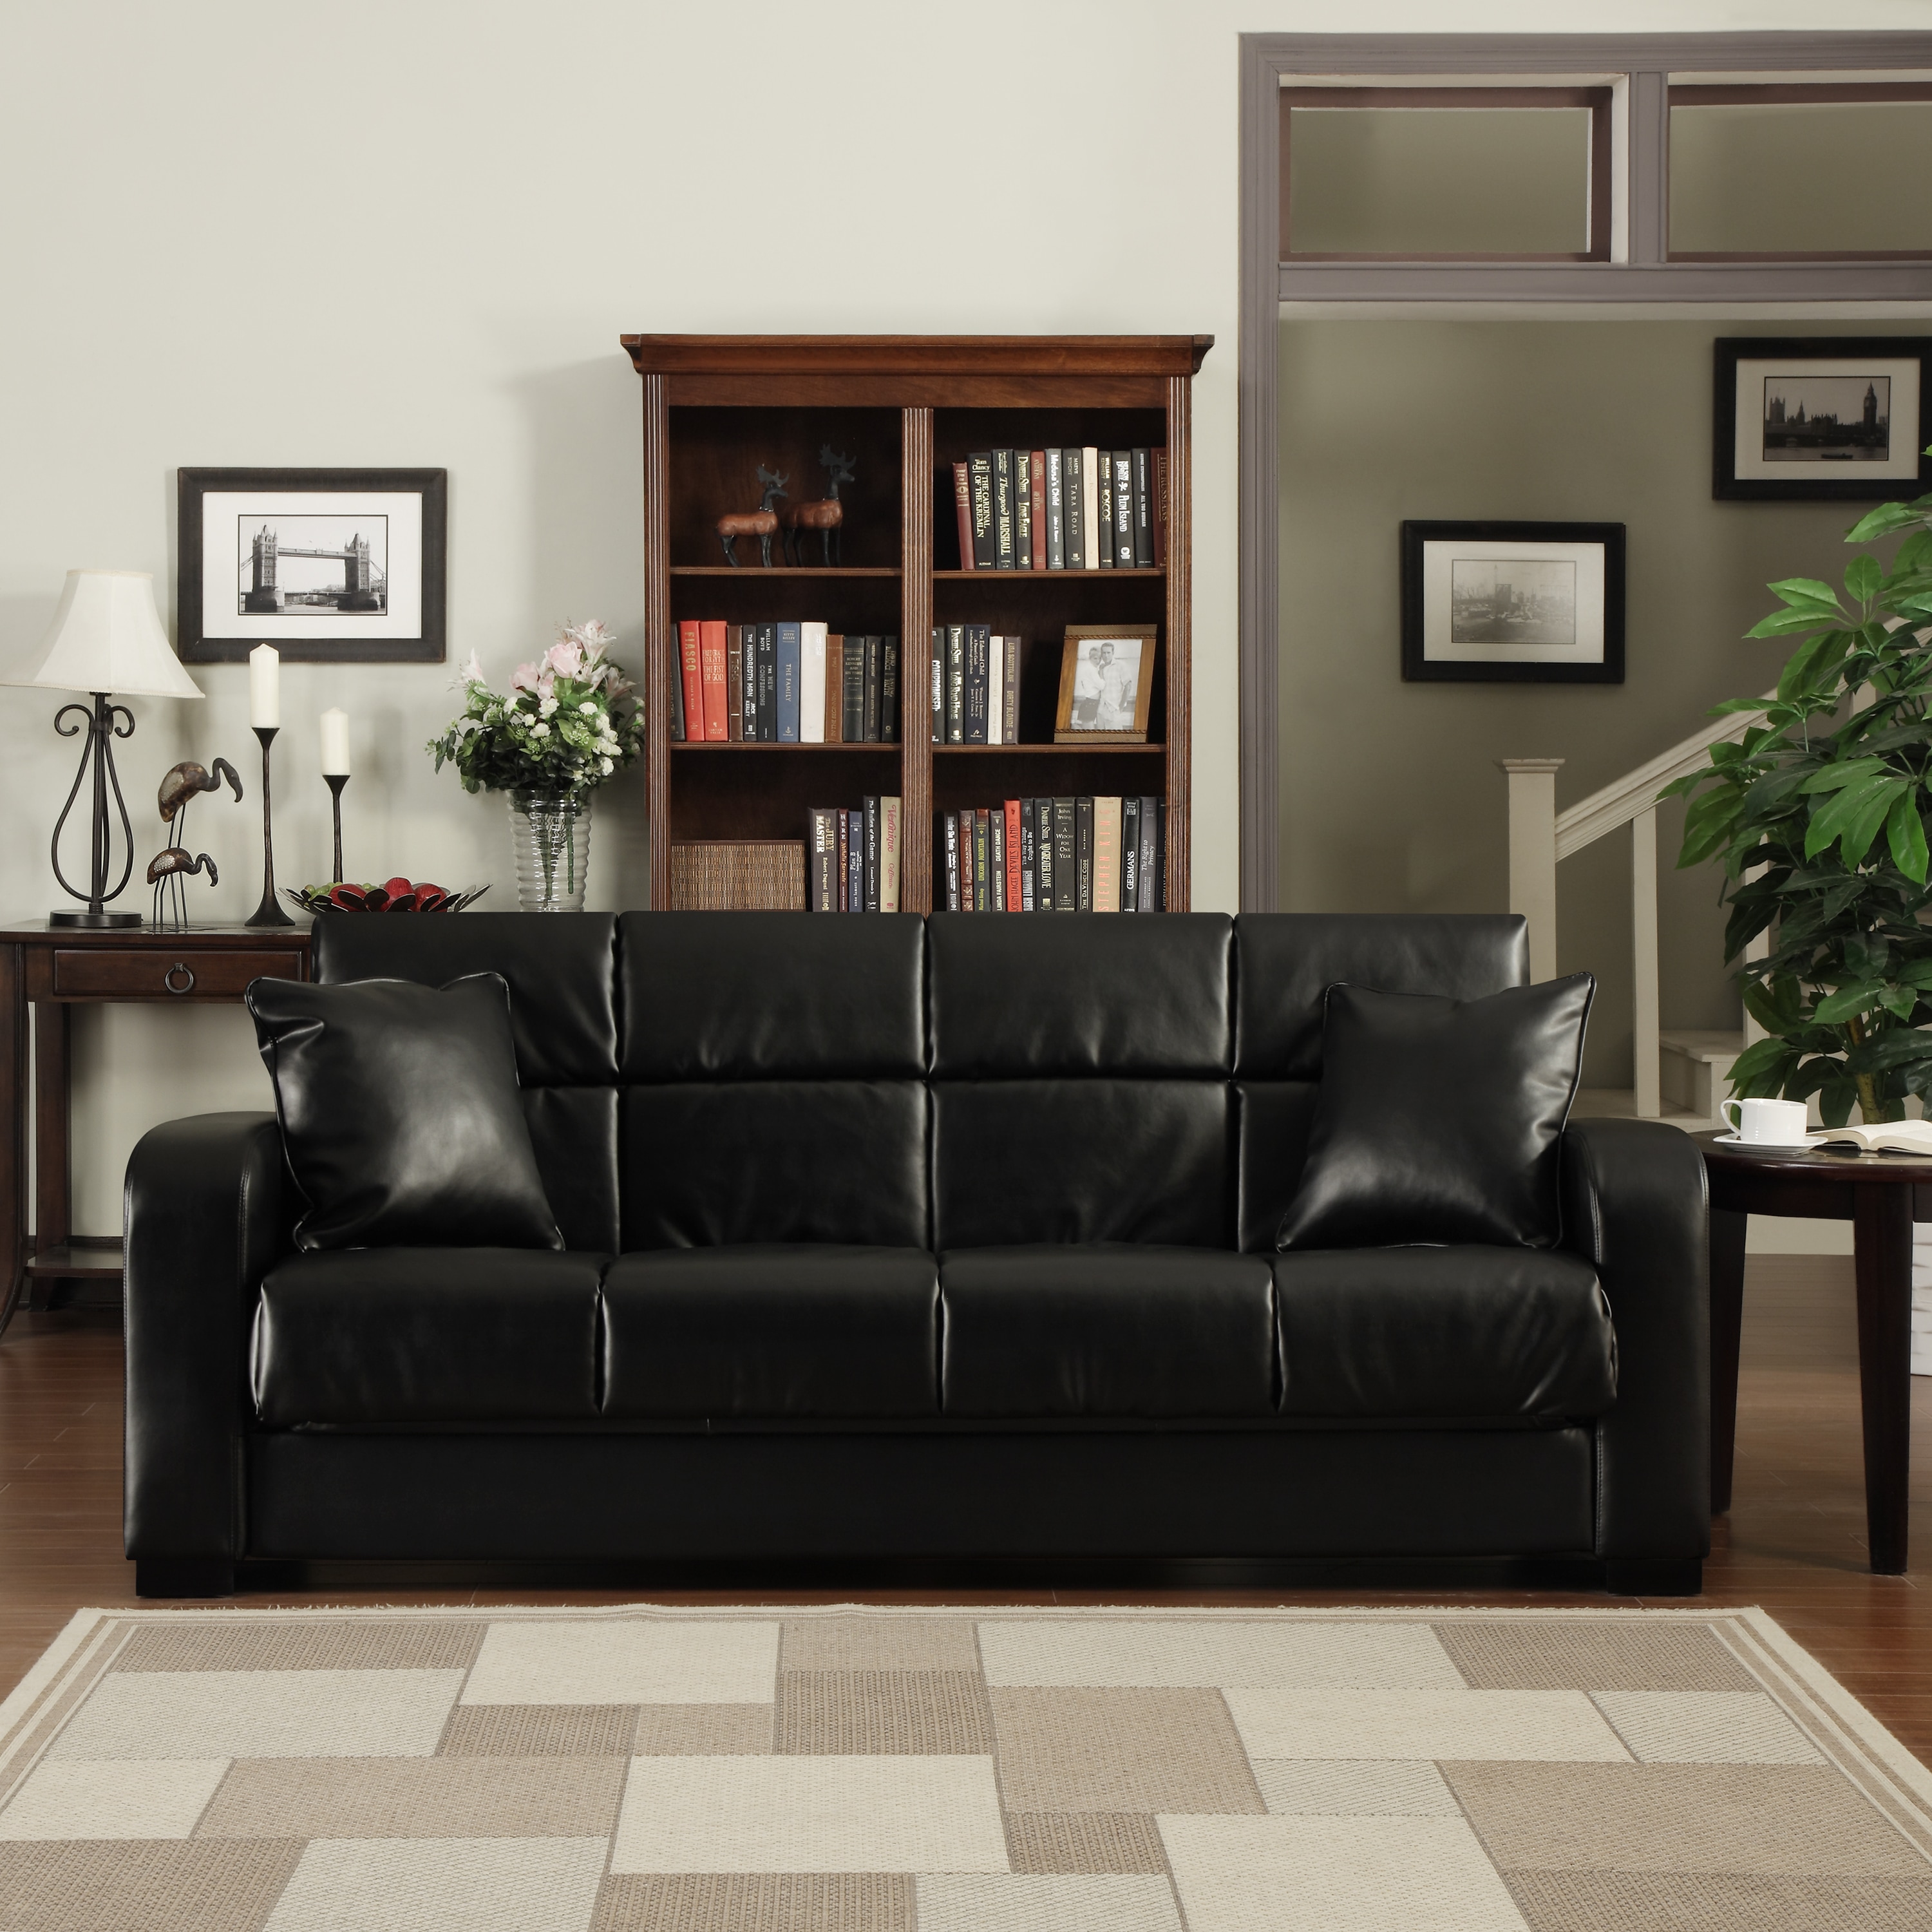 Portfolio Portfolio Turco Convert a couch?? Black Renu Leather Futon Sofa Sleeper Black Size Full